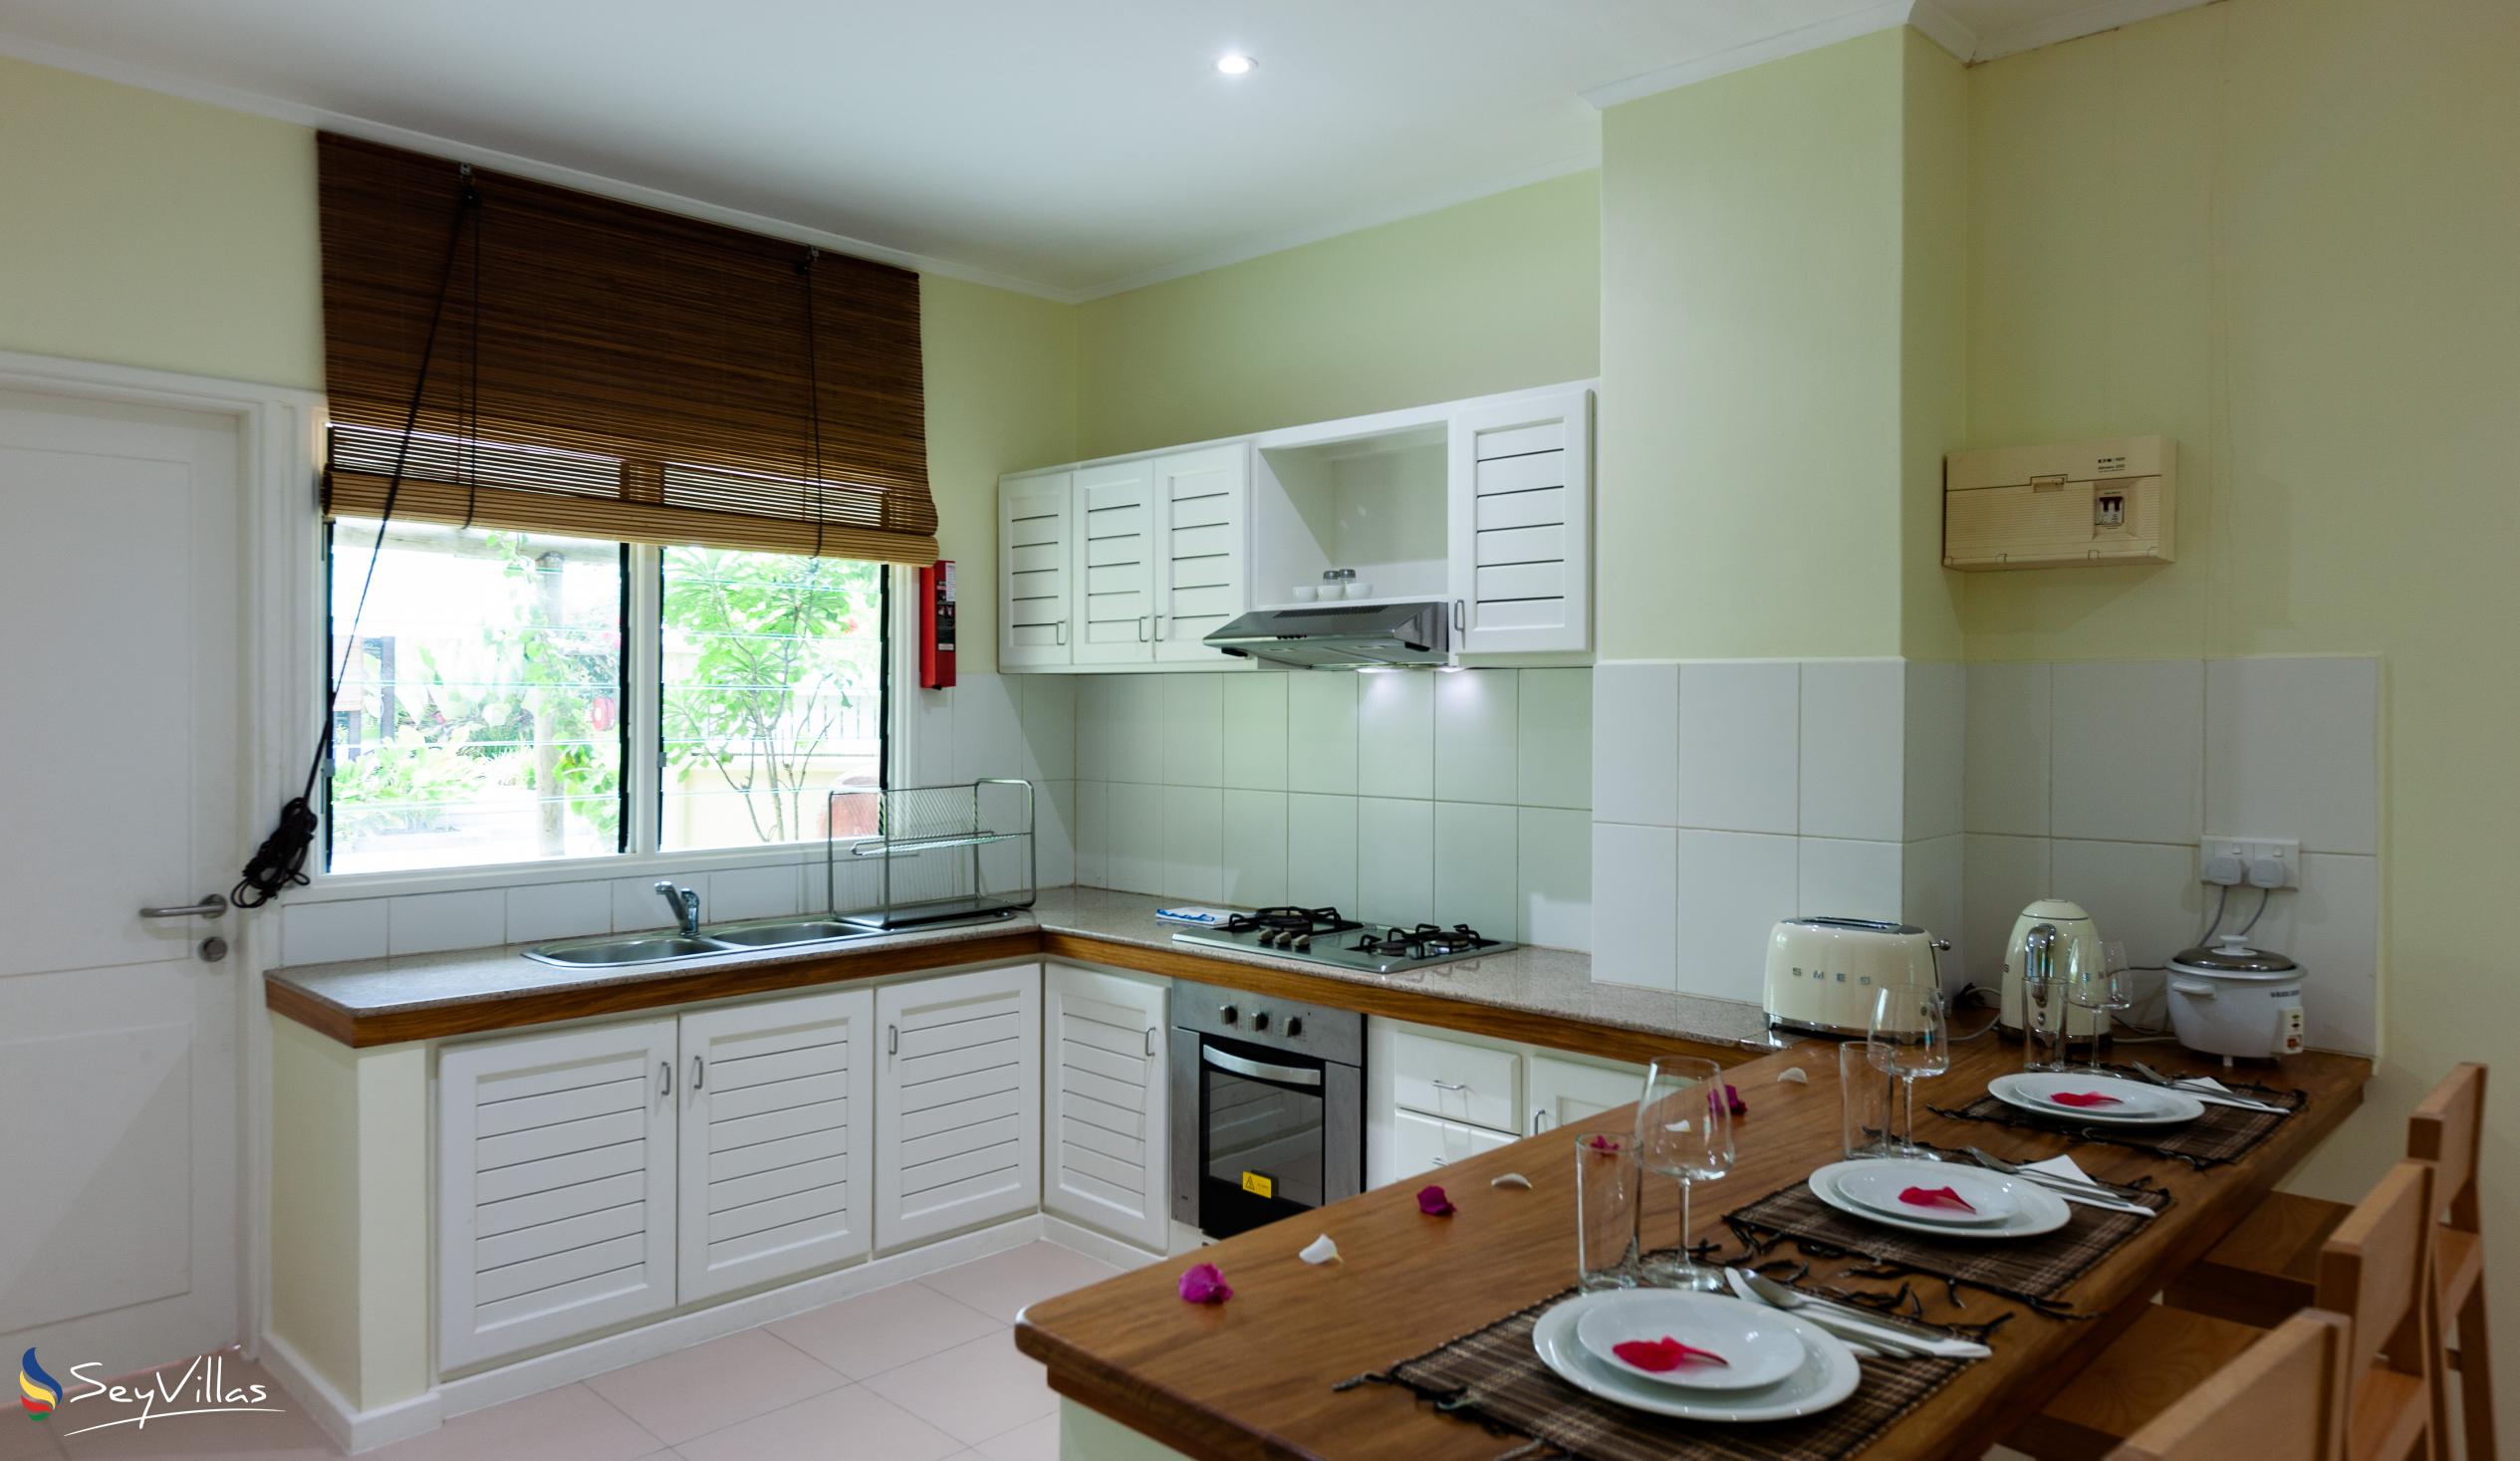 Foto 35: Residence Praslinoise - Familienappartement mit 2 Schlafzimmern (EG) - Praslin (Seychellen)